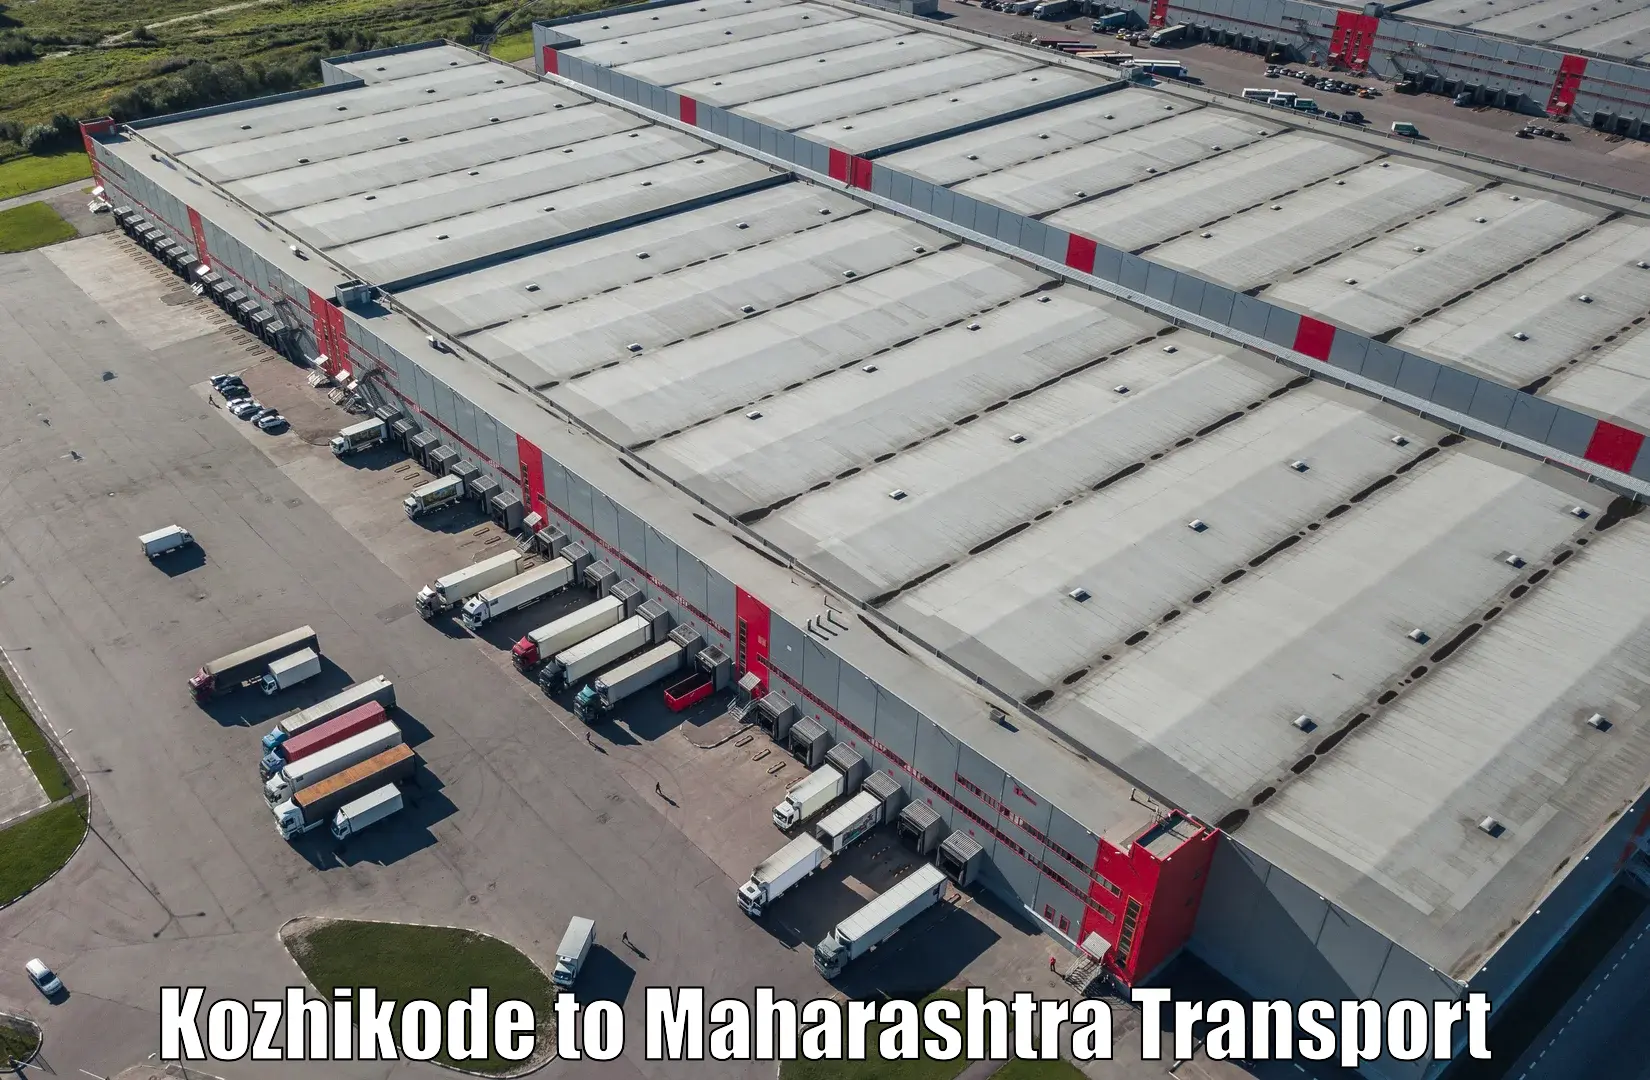 Online transport service Kozhikode to Sindhudurg